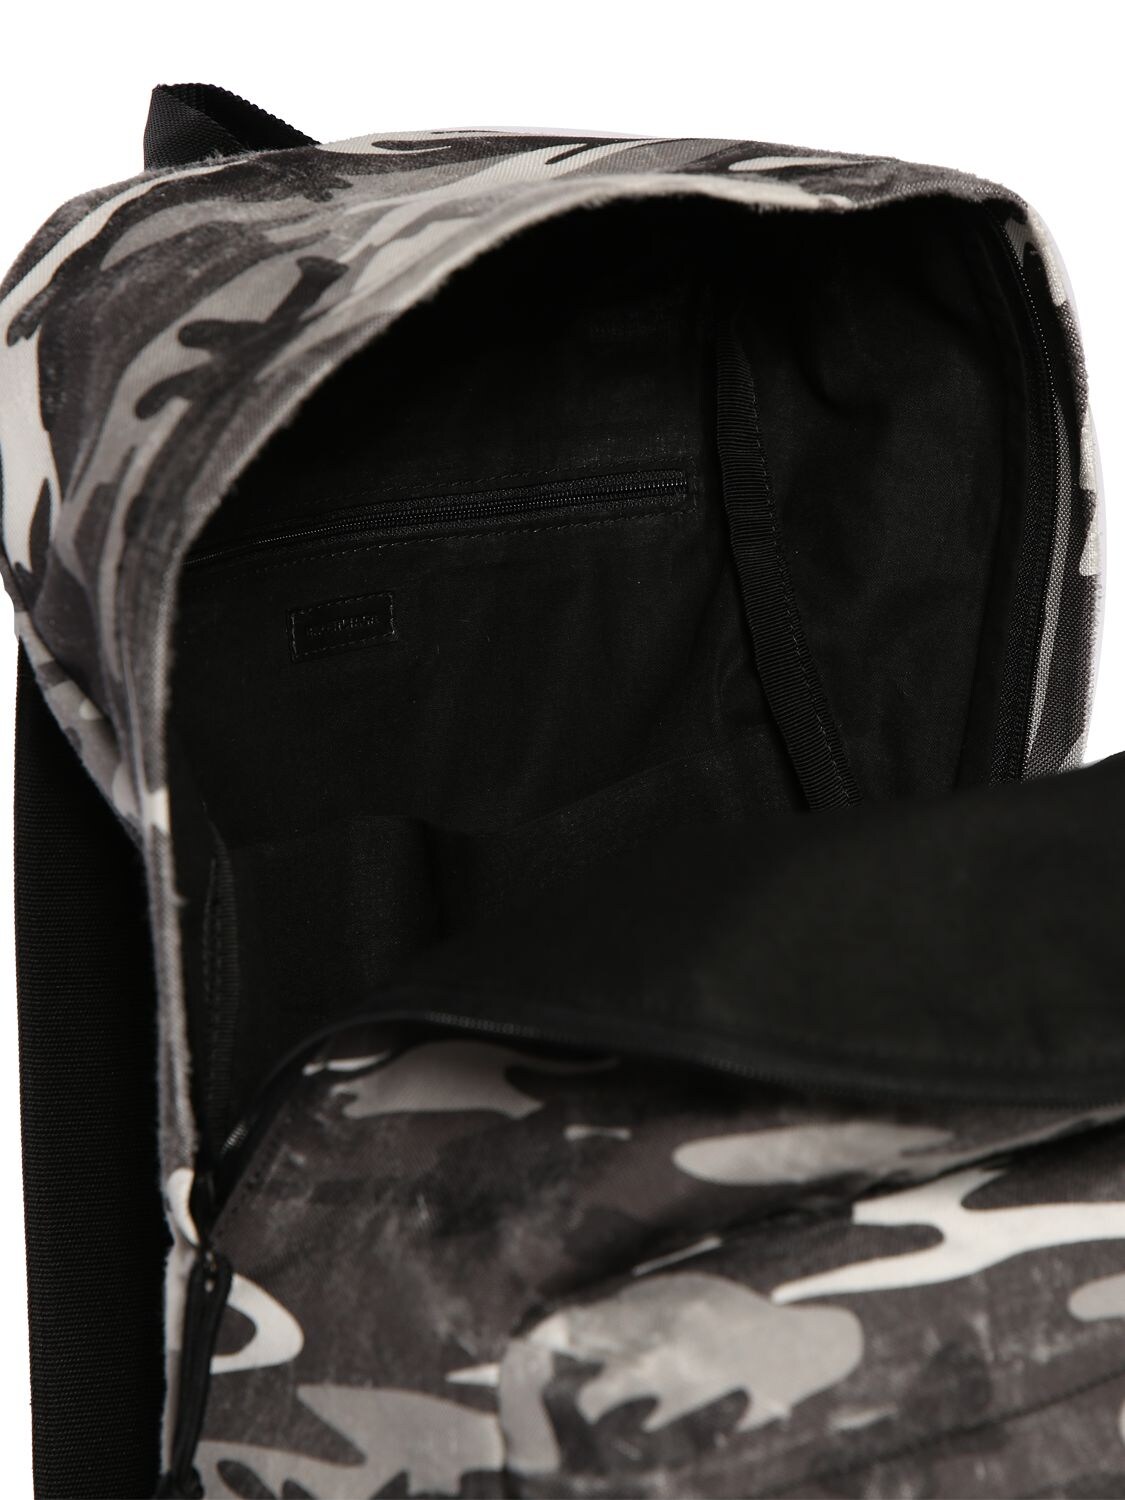 Shop Balenciaga Camo Printed Nylon Backpack In Grey,white